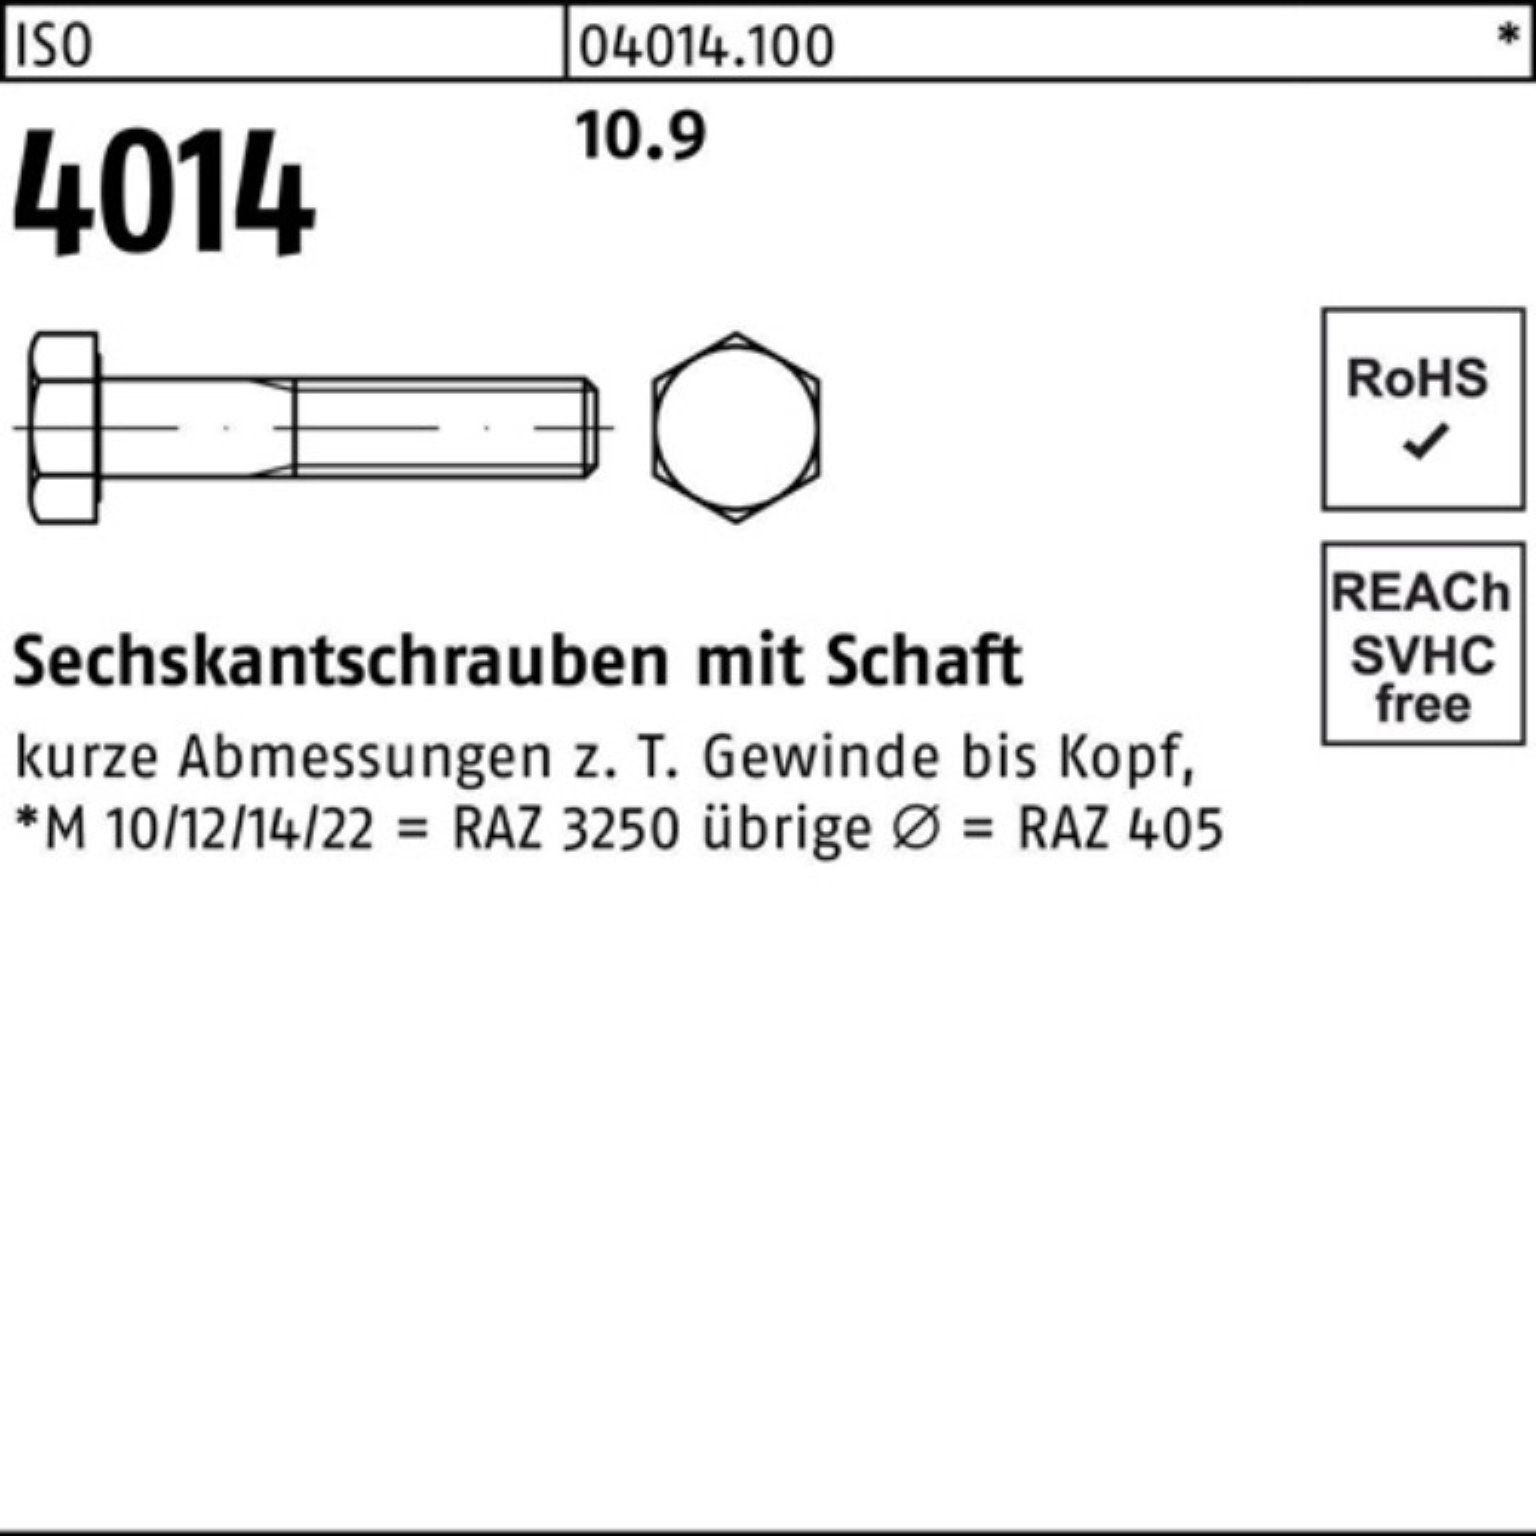 Bufab Sechskantschraube 100er Sechskantschraube 10.9 Stück Pack ISO 1 IS M20x 4014 Schaft 290